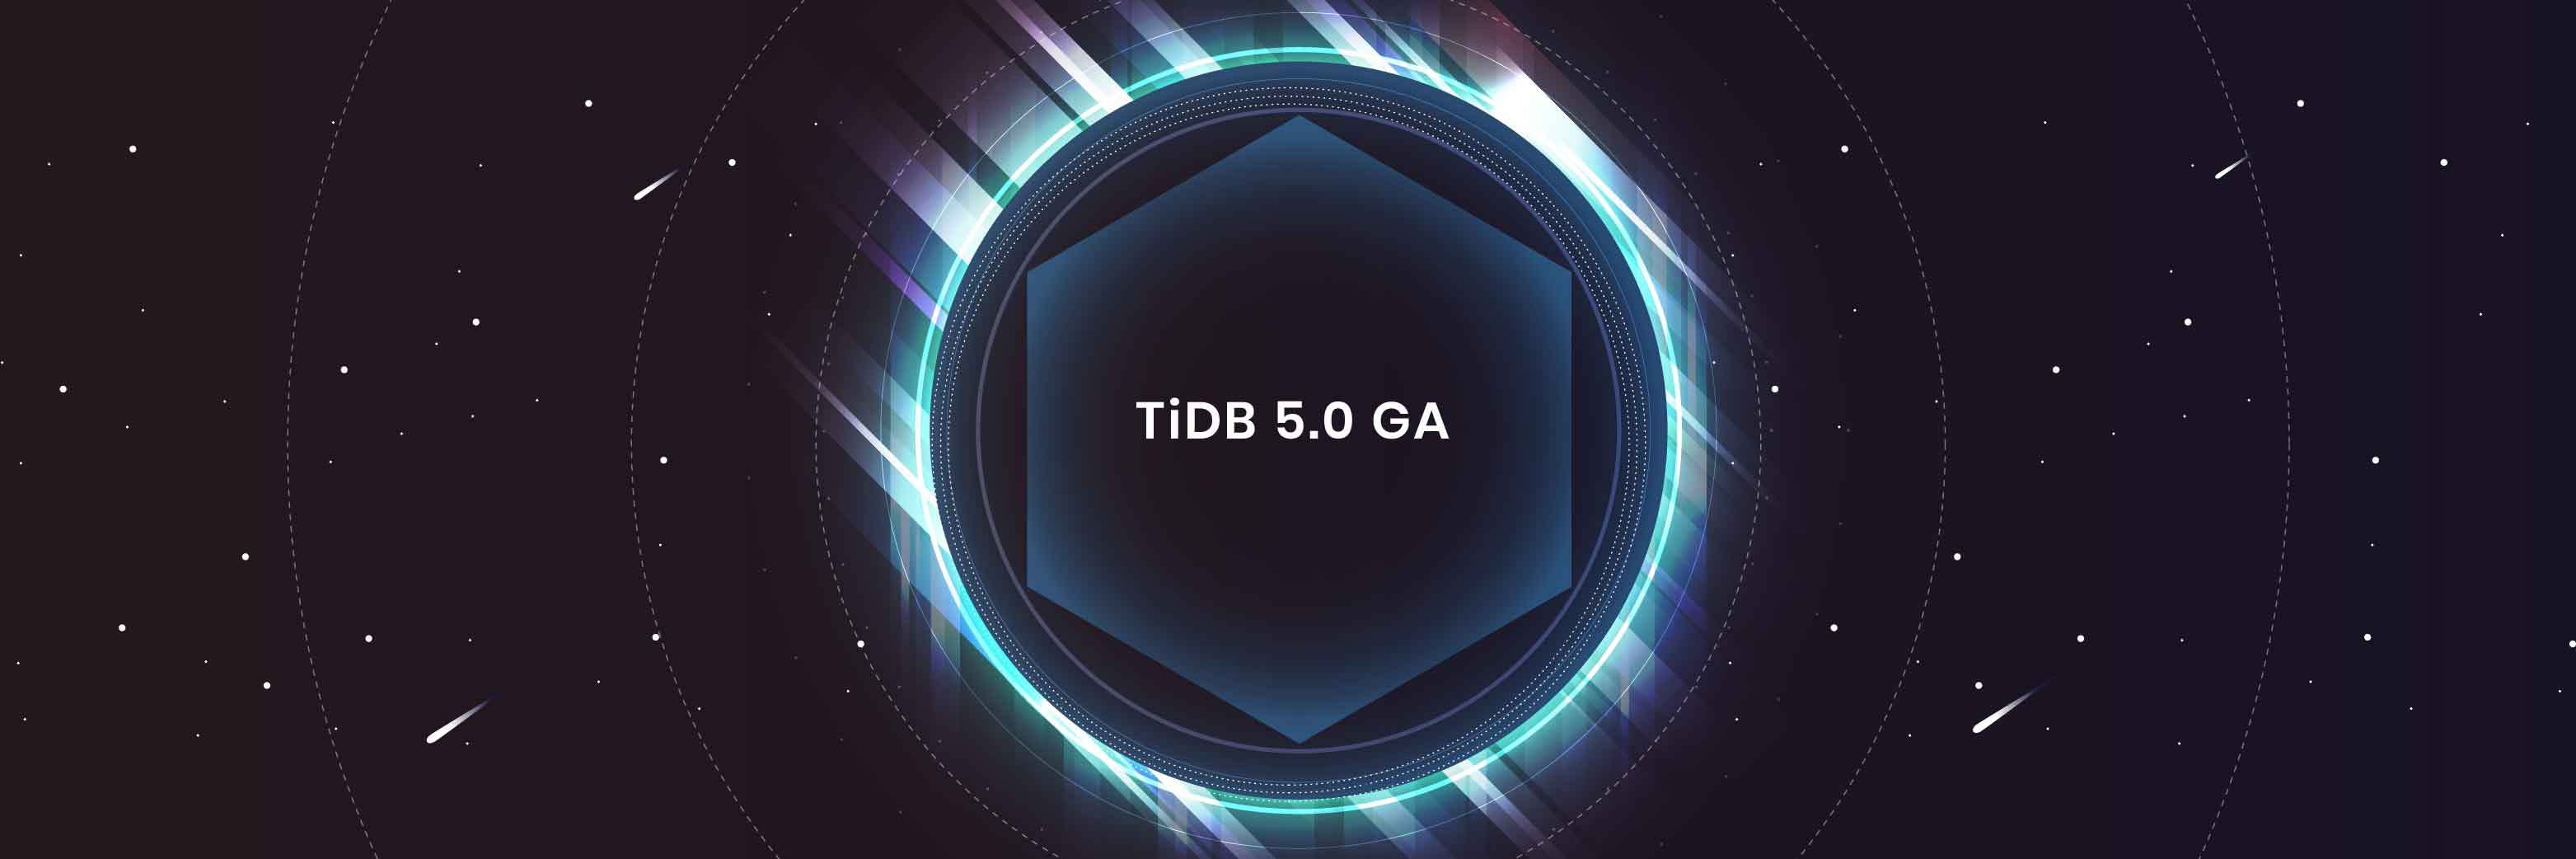 TiDB 5.0 GA